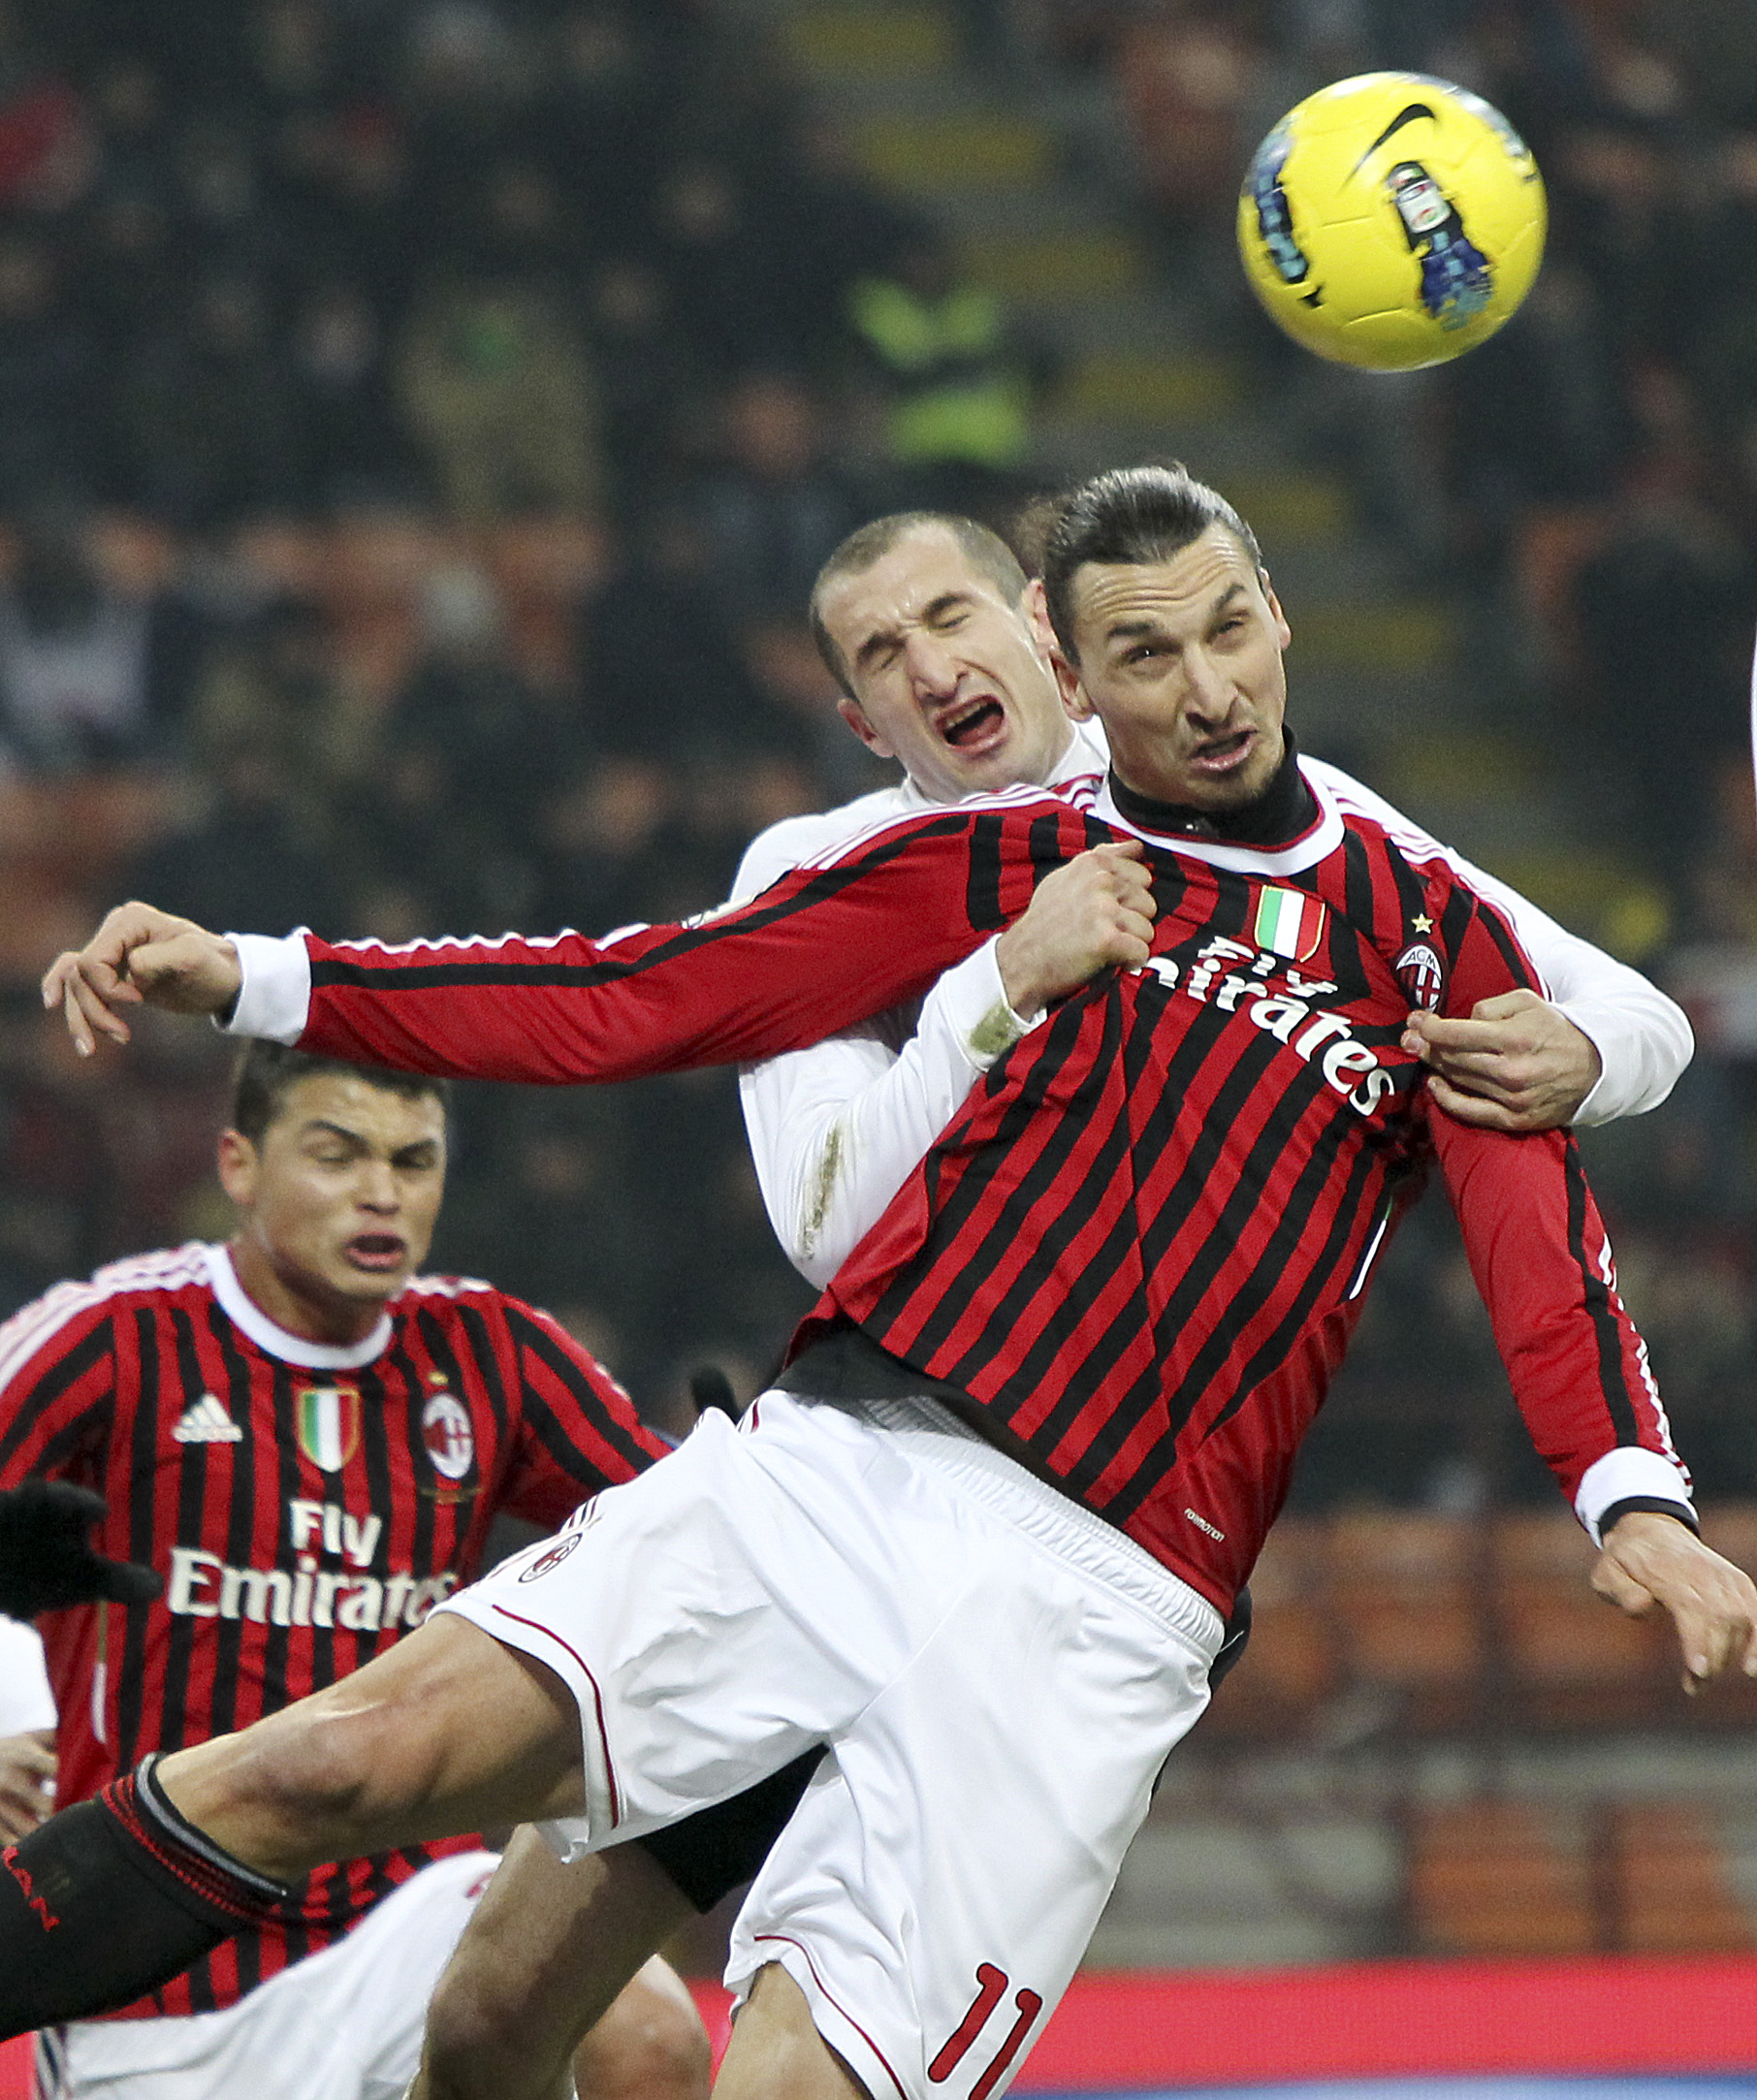 Milan gästar Juventus i den italienska cupen - och Ibrahimovic ställs mot spelaren han alltid bråkar med: Giorgio Chiellini. 